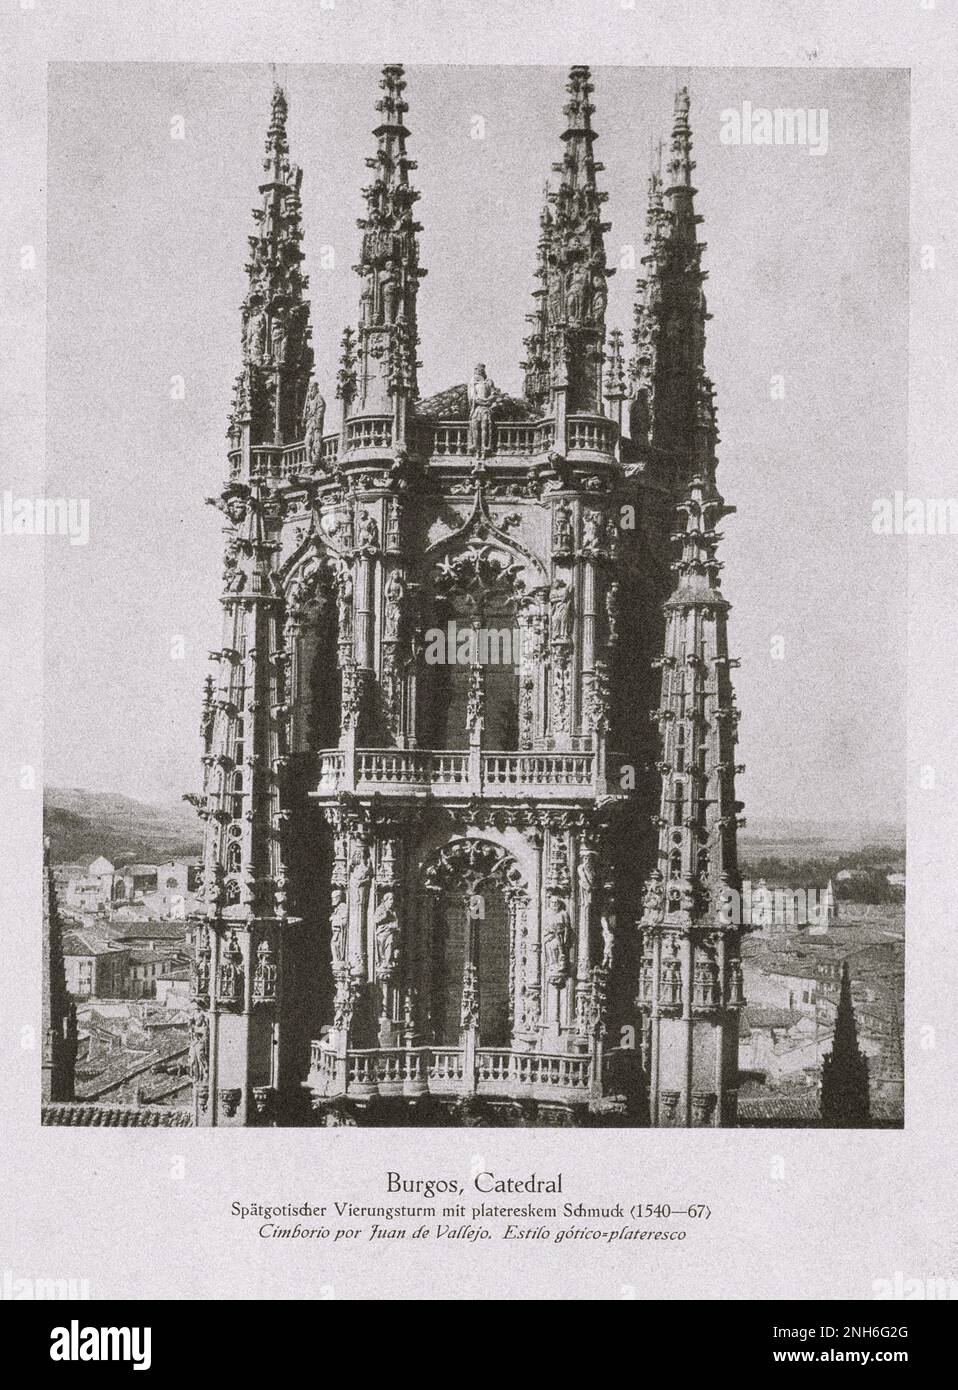 Architektur des alten Spaniens. Oldtimer-Foto der Kathedrale von Burgos. Spätgotischer Kreuzturm mit Plateresque-Dekorationen (1540-1567). Stockfoto